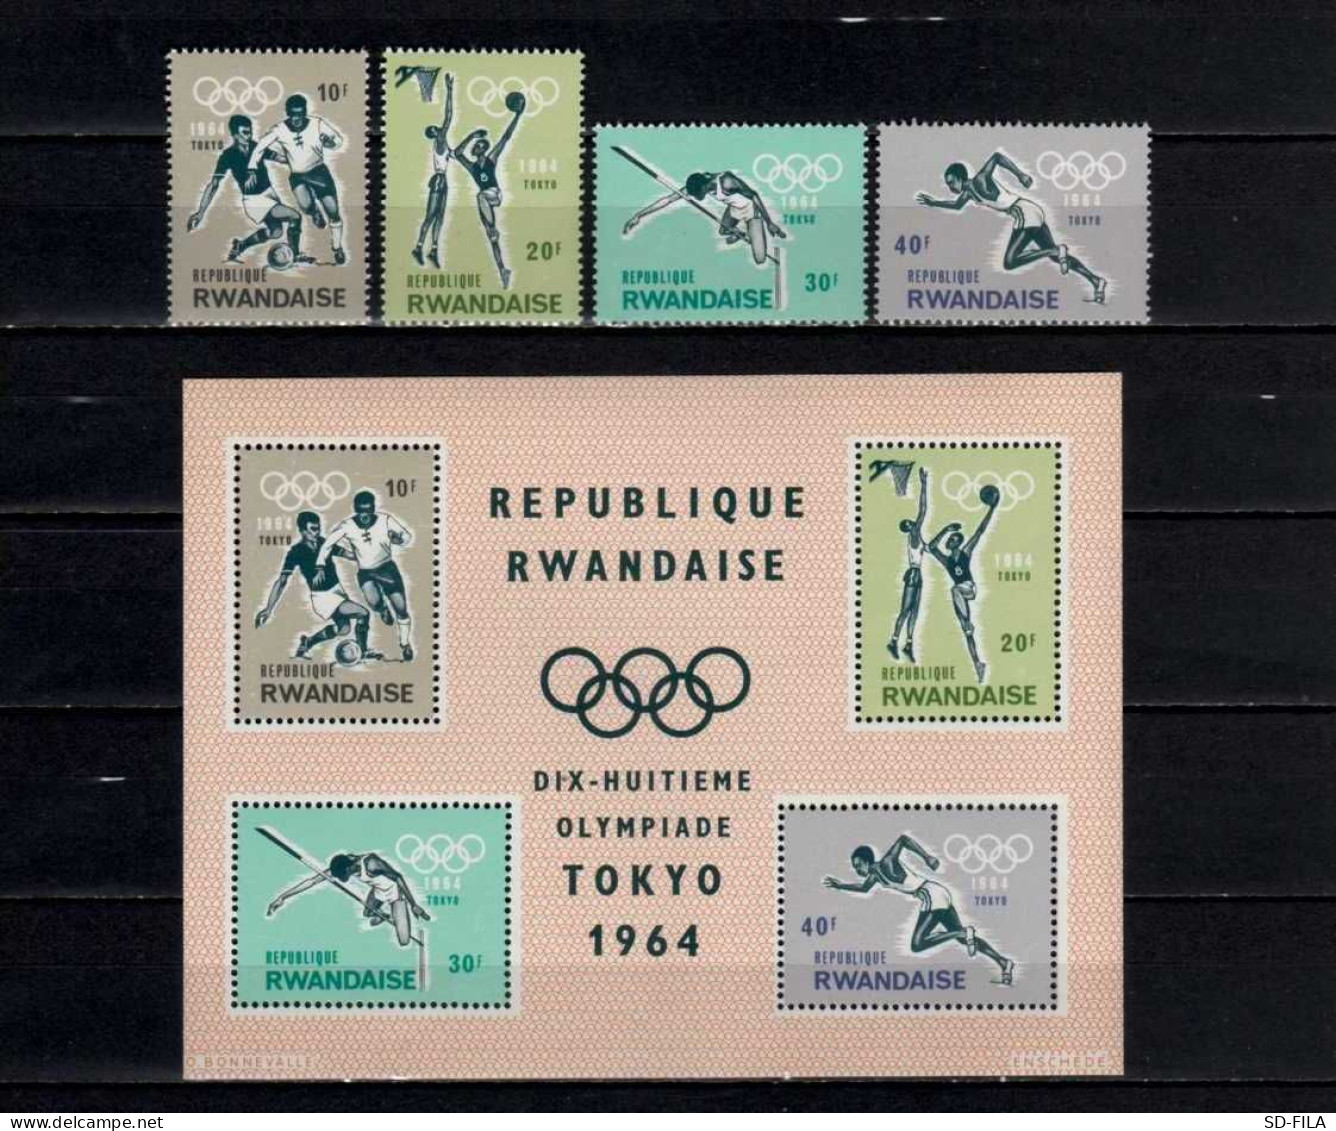 Belgian Congo - Rwanda 1964 N° 81A/82C + BL2 MNH Olympic Games - Jeux Olympique Tokio - Japan C15.00Eu. - Neufs